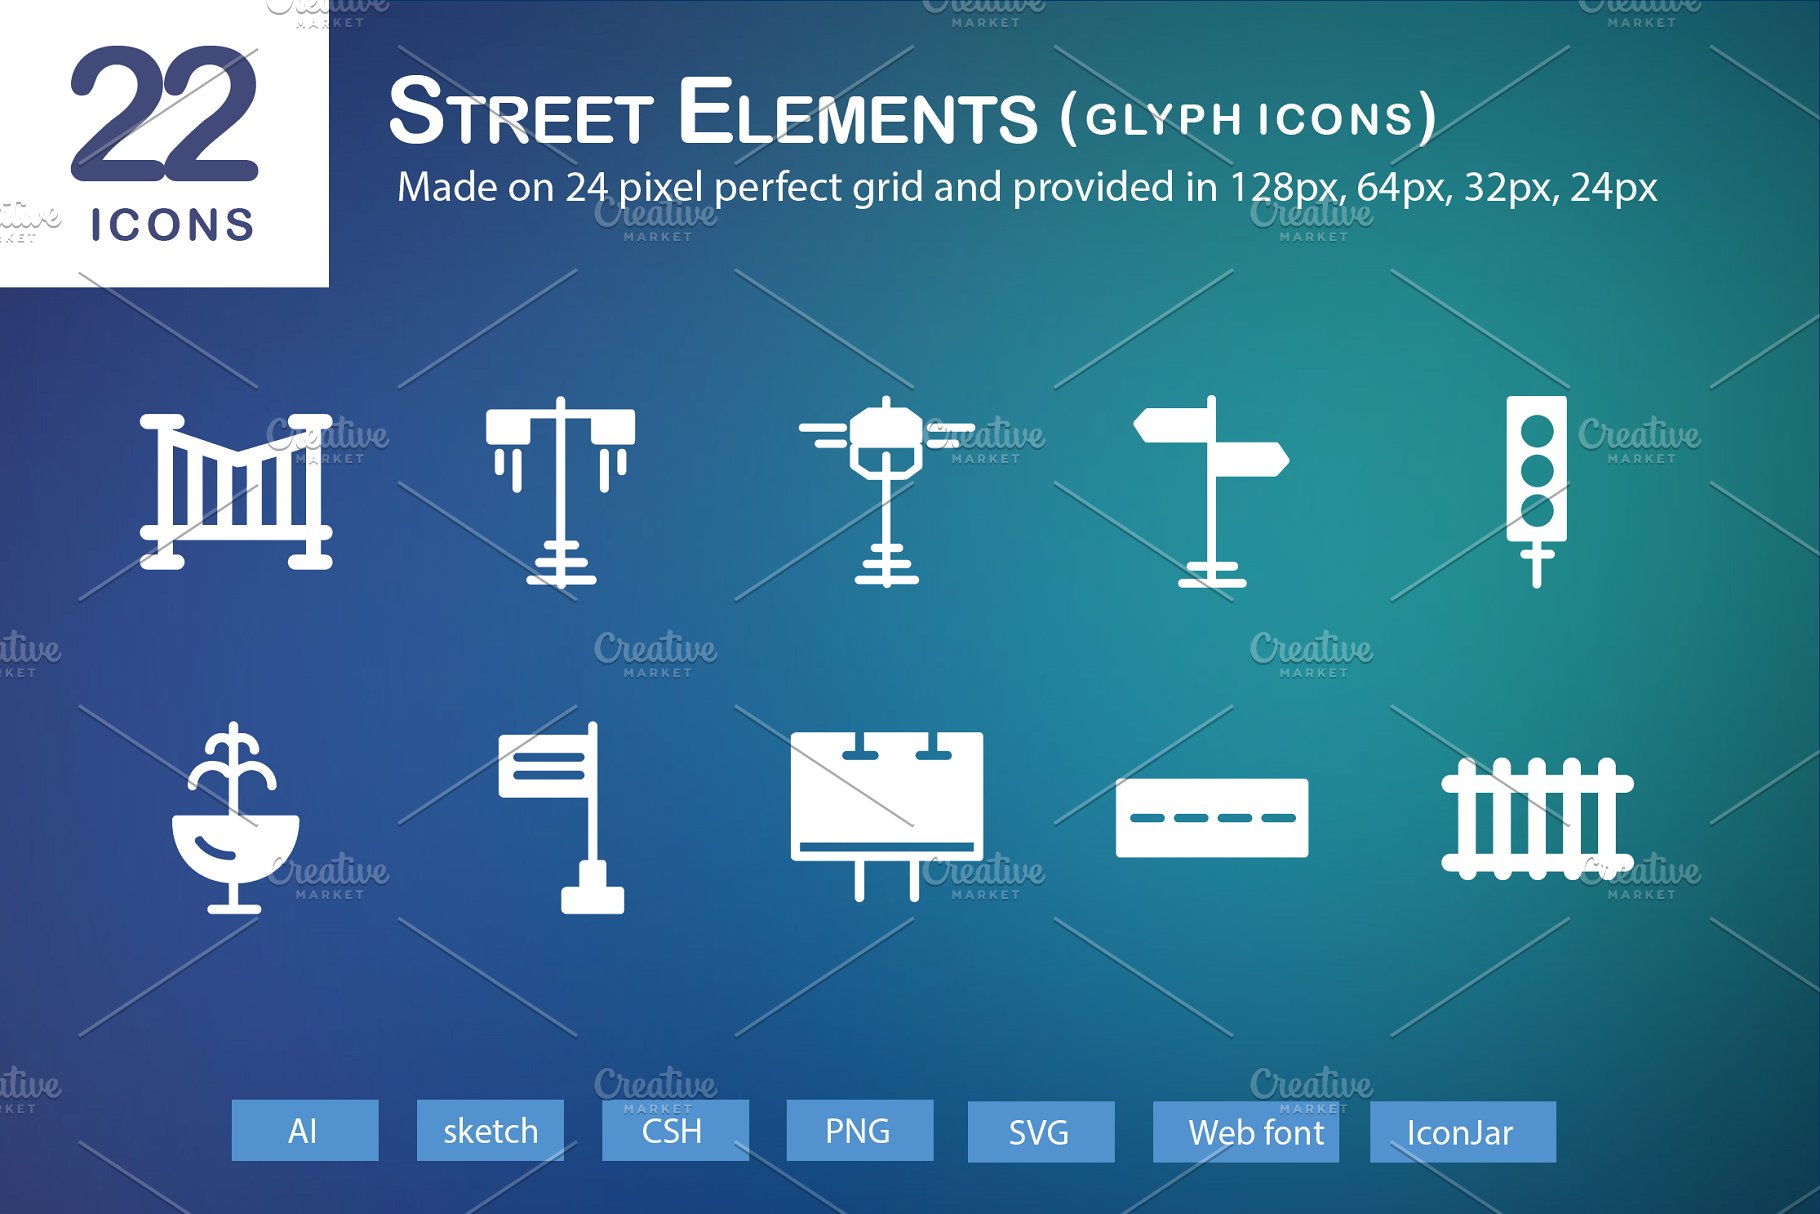 街道元素图标素材 22 Street Elements Gl